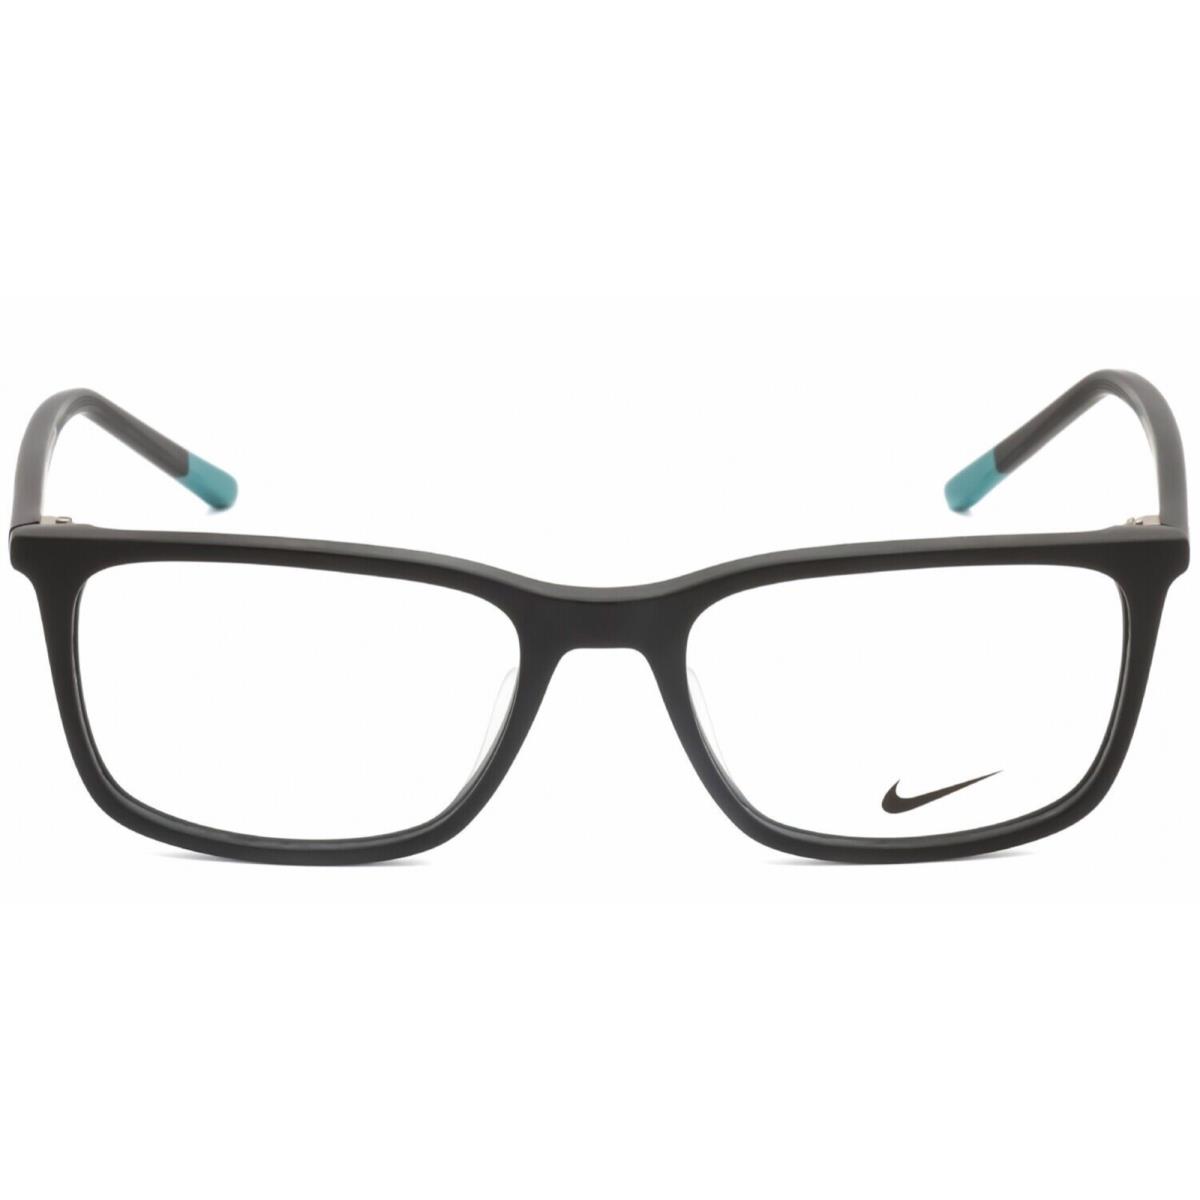 Classic Nike Reading Glasses 7254 006 54-18 145 Matte Black Frames Readers